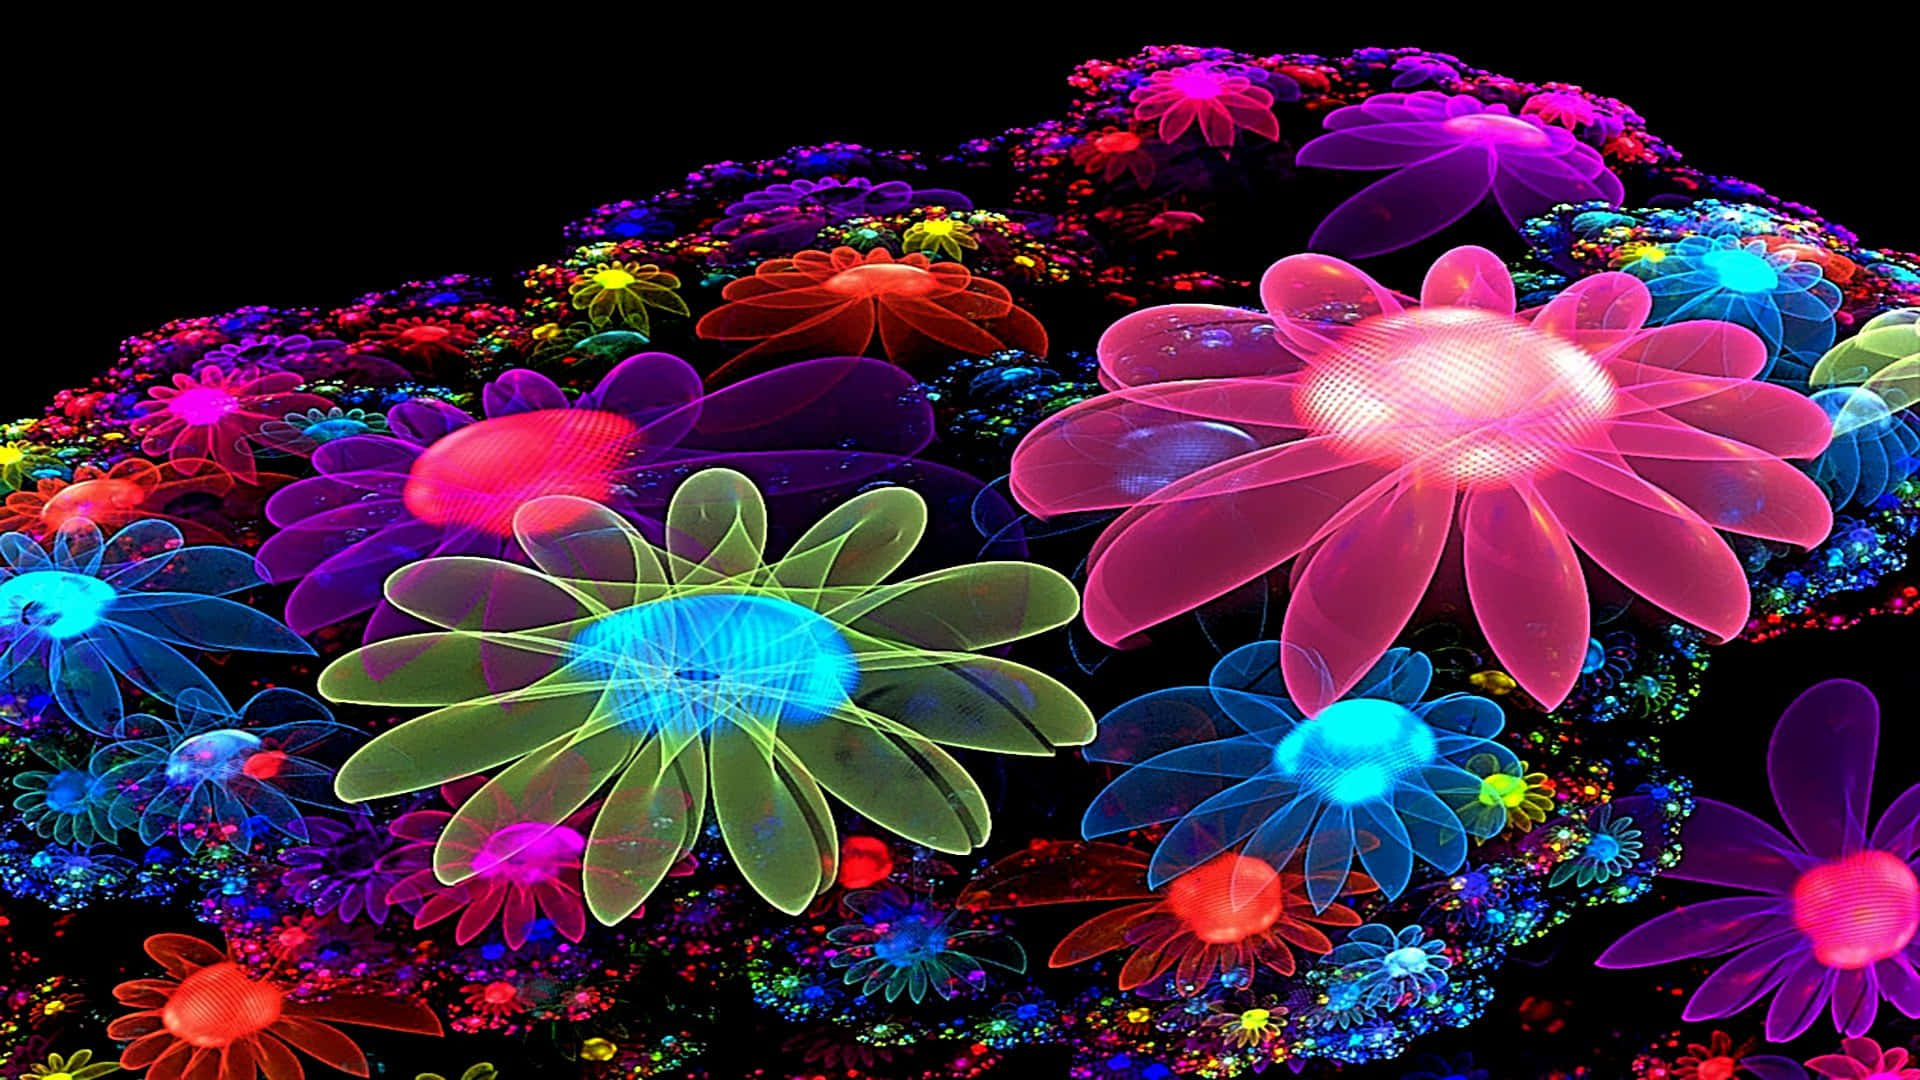 HD wallpaper neon flowers  Wallpaper Flare